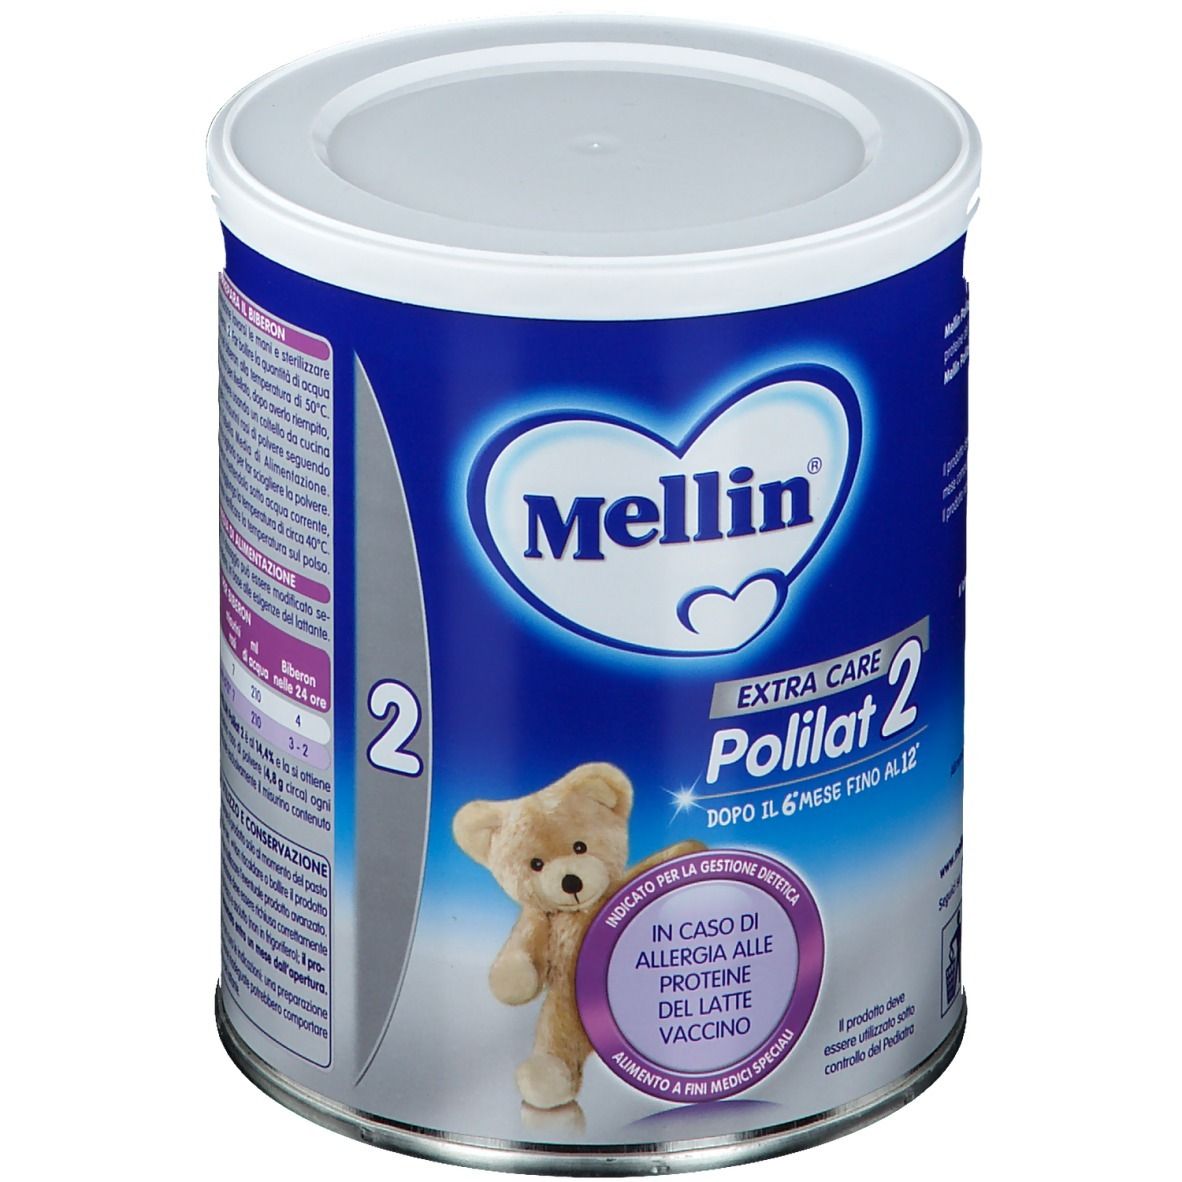 Mellin polilat 2 latte polvere 400 g